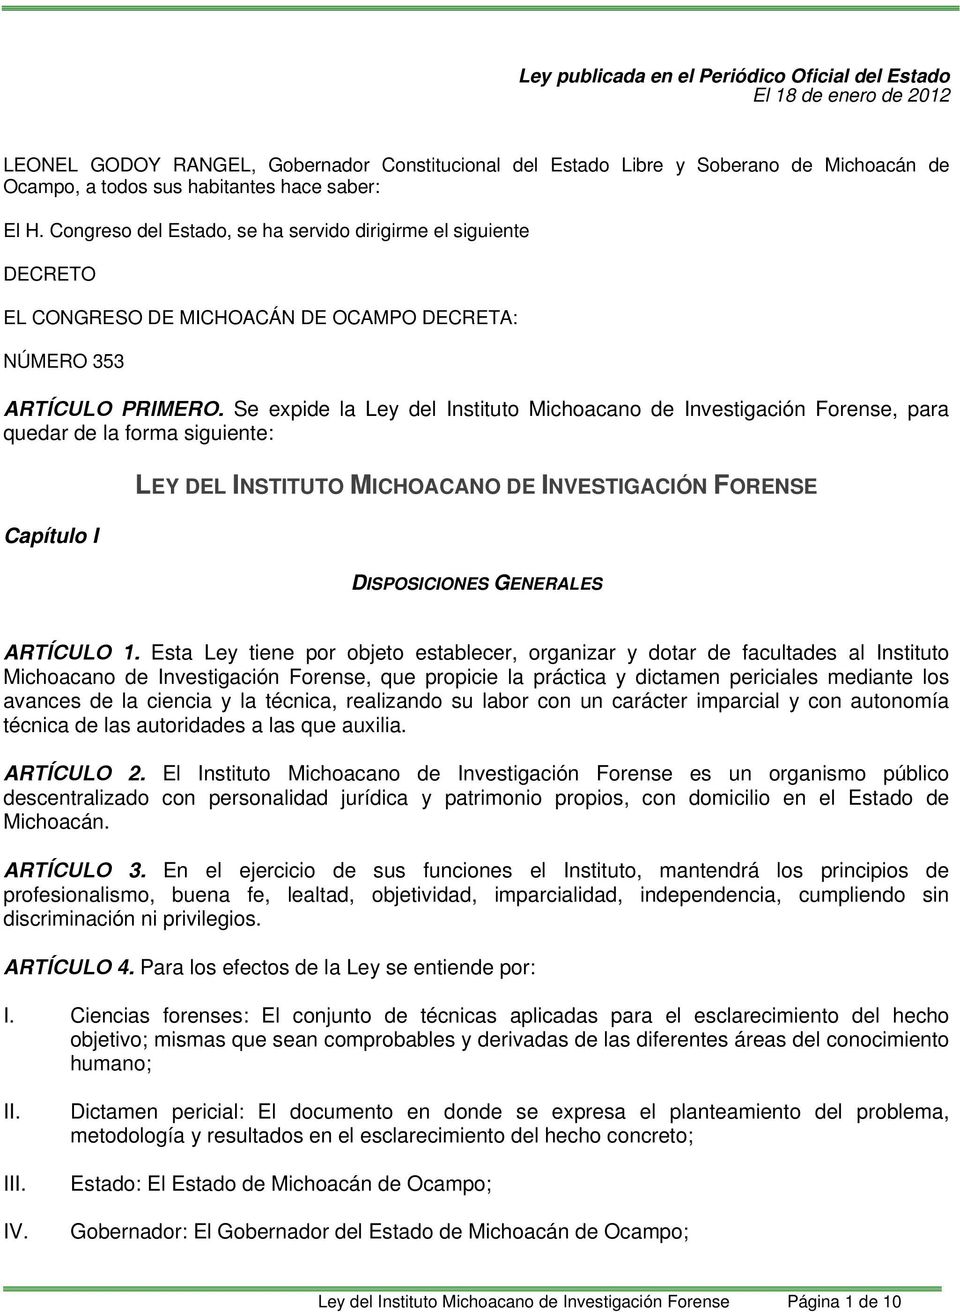 Se expide la Ley del Instituto Michoacano de Investigación Forense, para quedar de la forma siguiente: Capítulo I LEY DEL INSTITUTO MICHOACANO DE INVESTIGACIÓN FORENSE DISPOSICIONES GENERALES